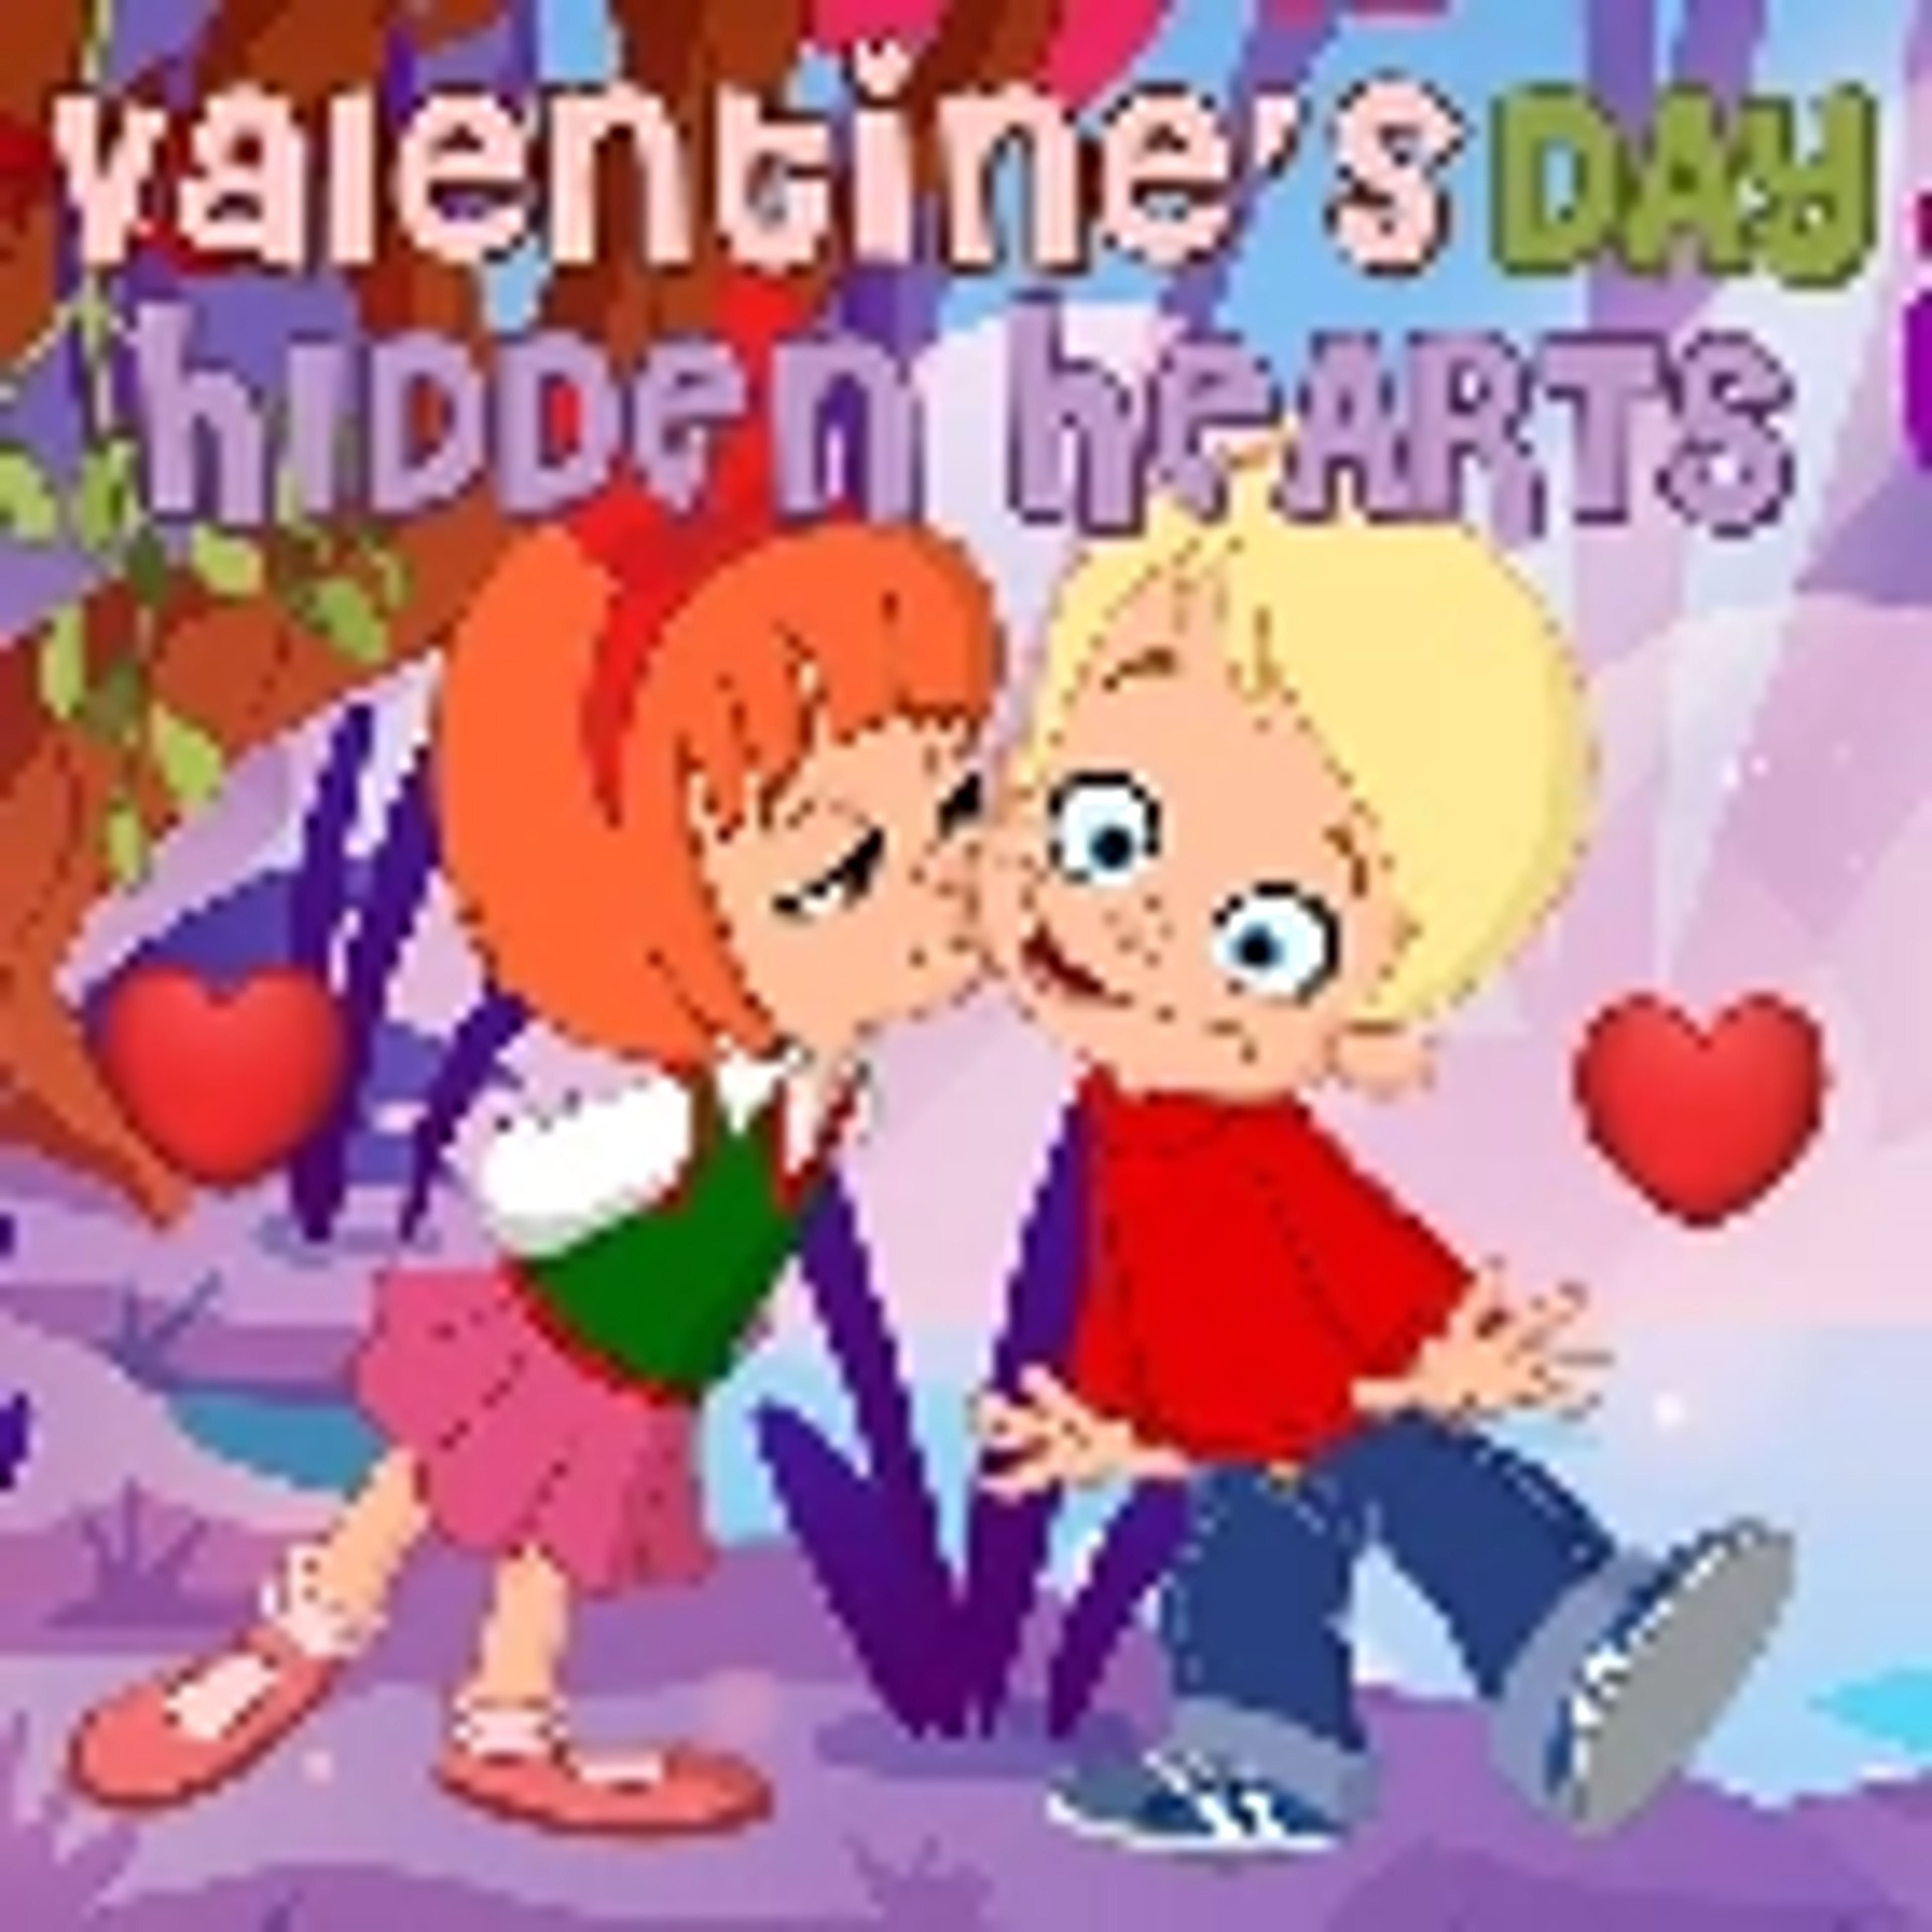 Valentine's Day Hidden Hearts